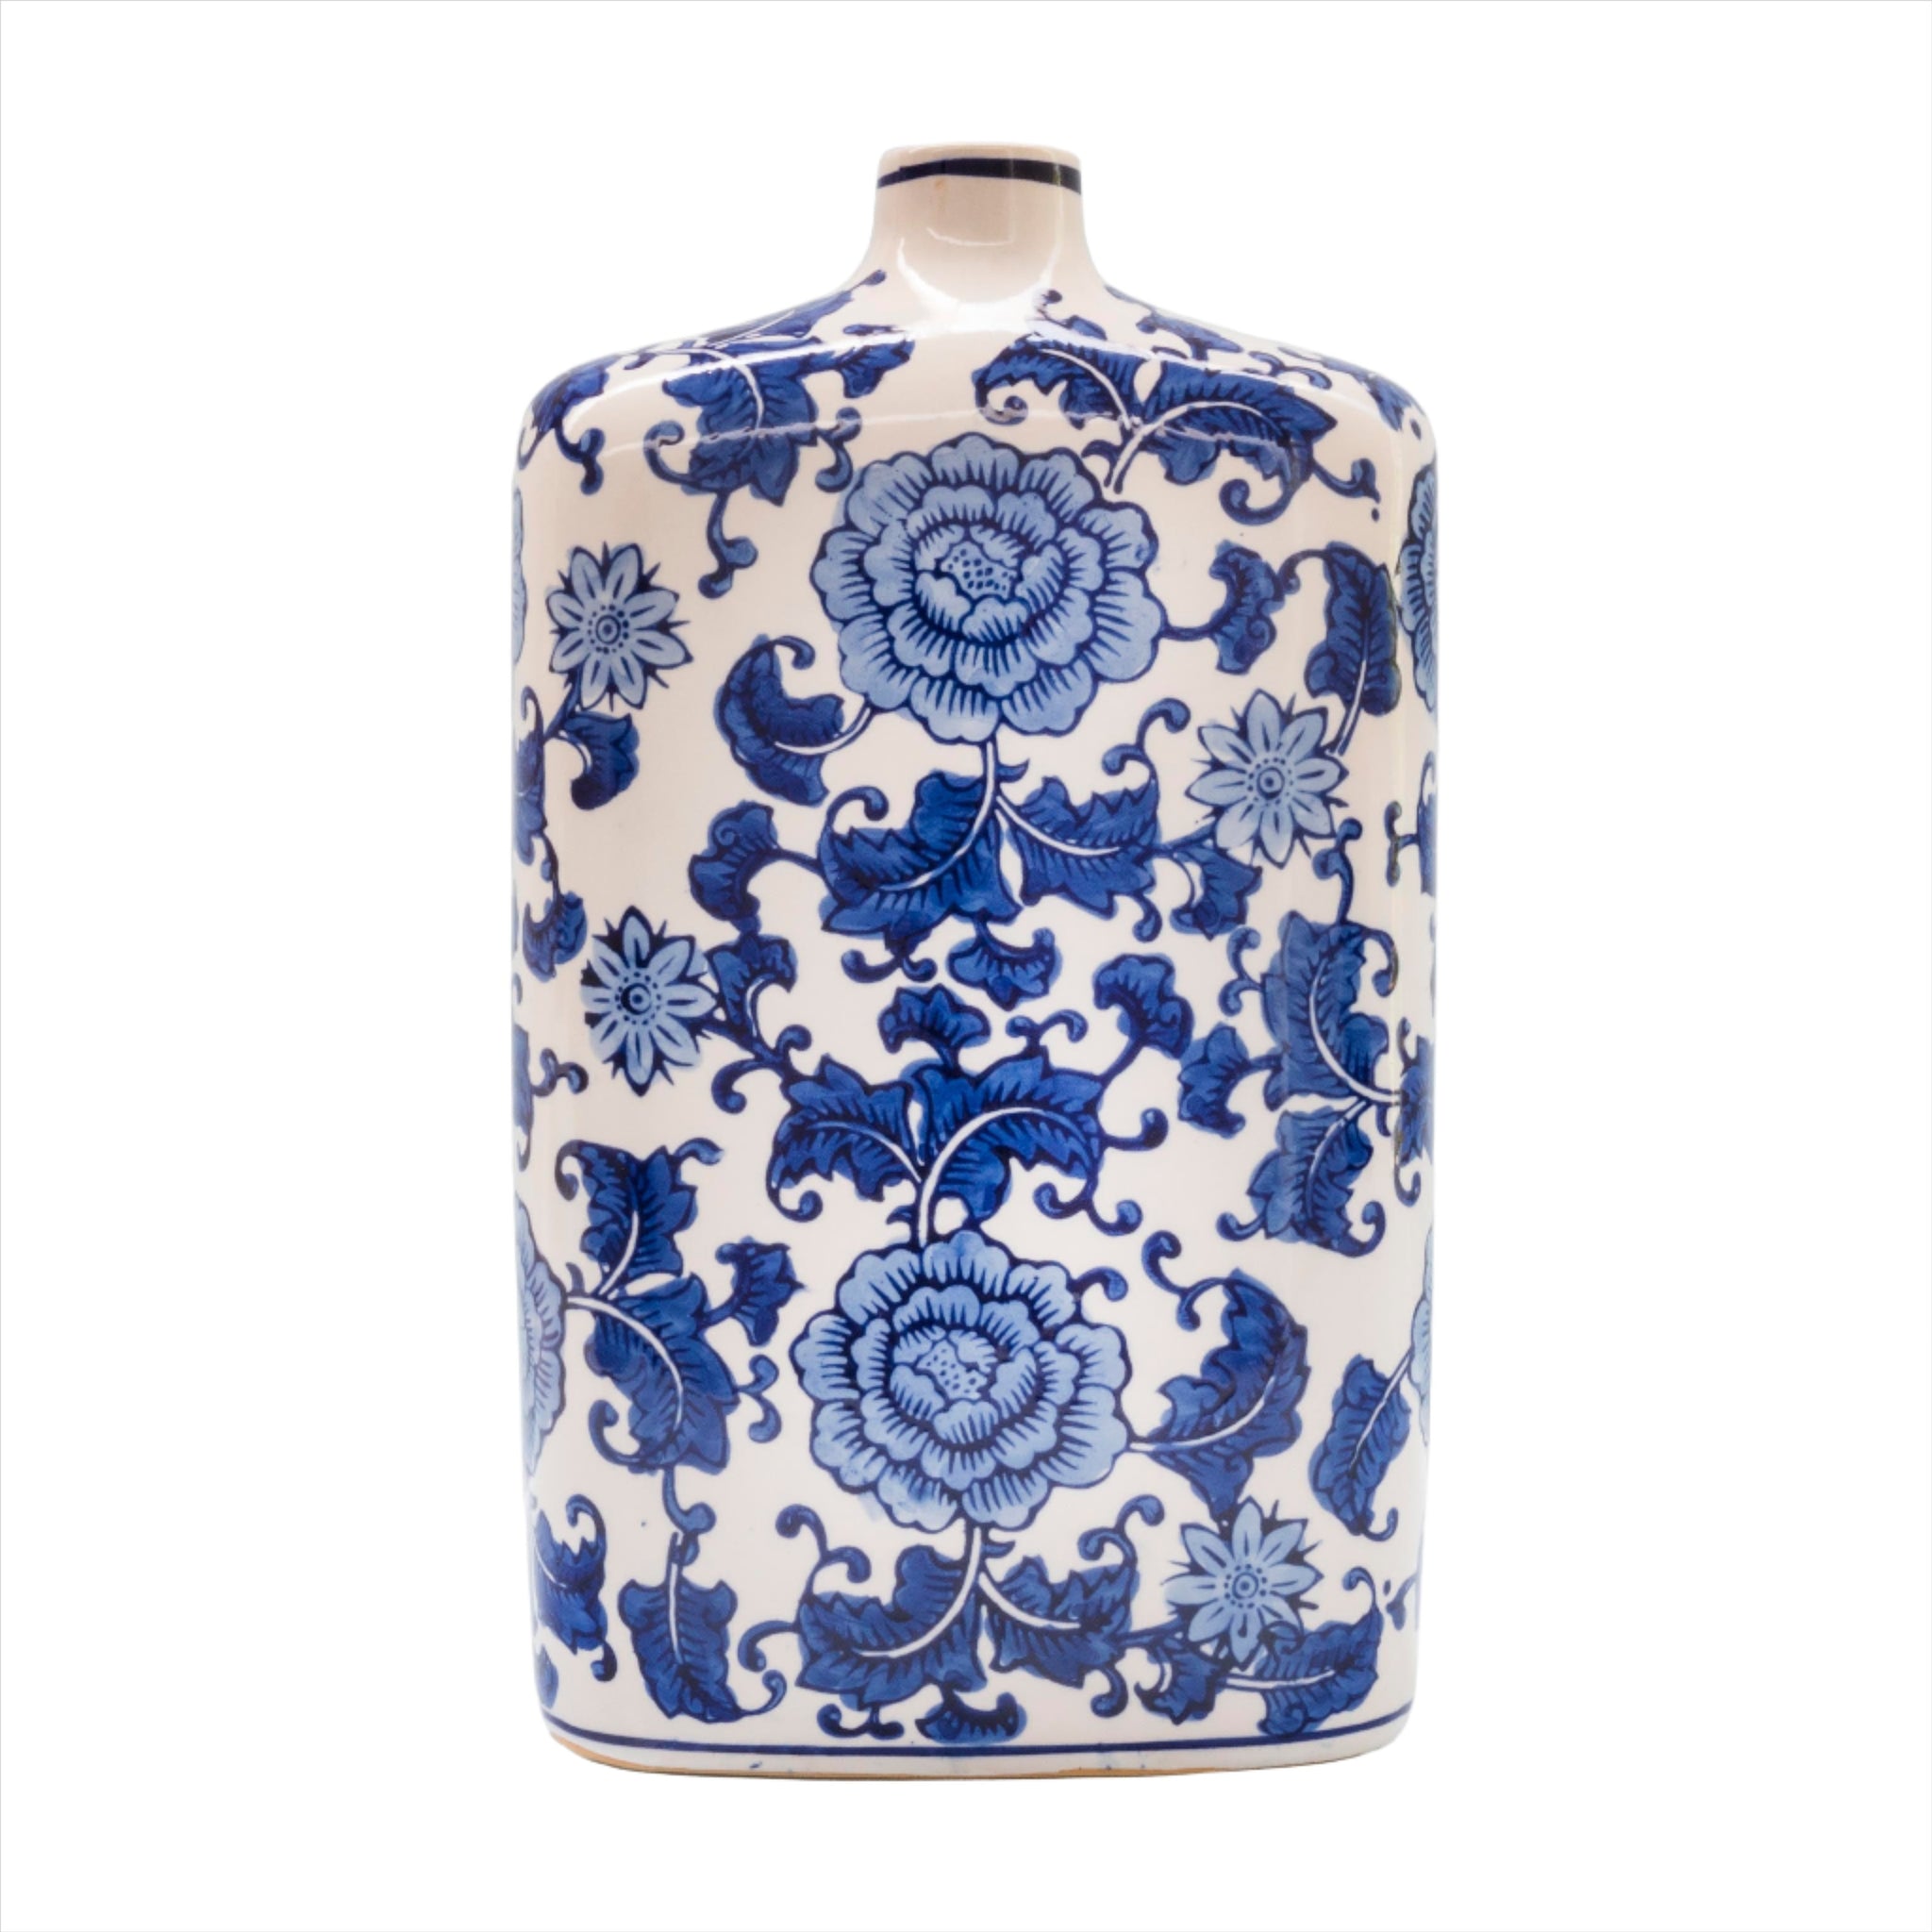 Blue Garden Square Shouldered Vase - Euro Ceramica 